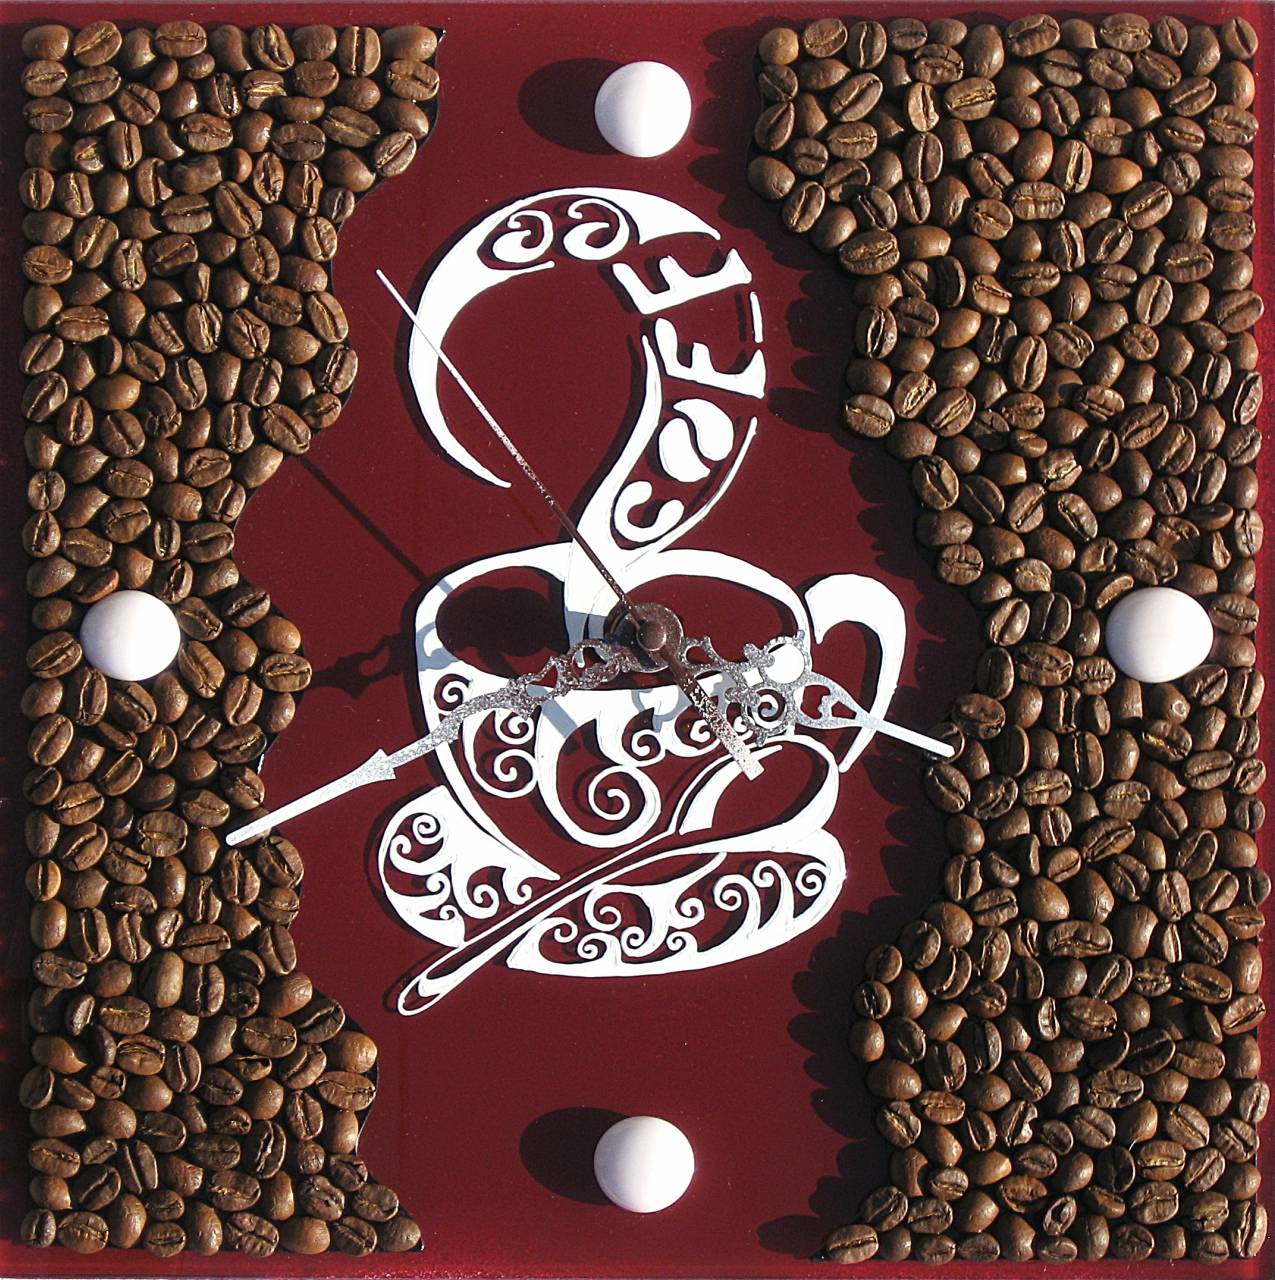 Поделки из кофе - 95 фото креативных идей применения зерен кофе